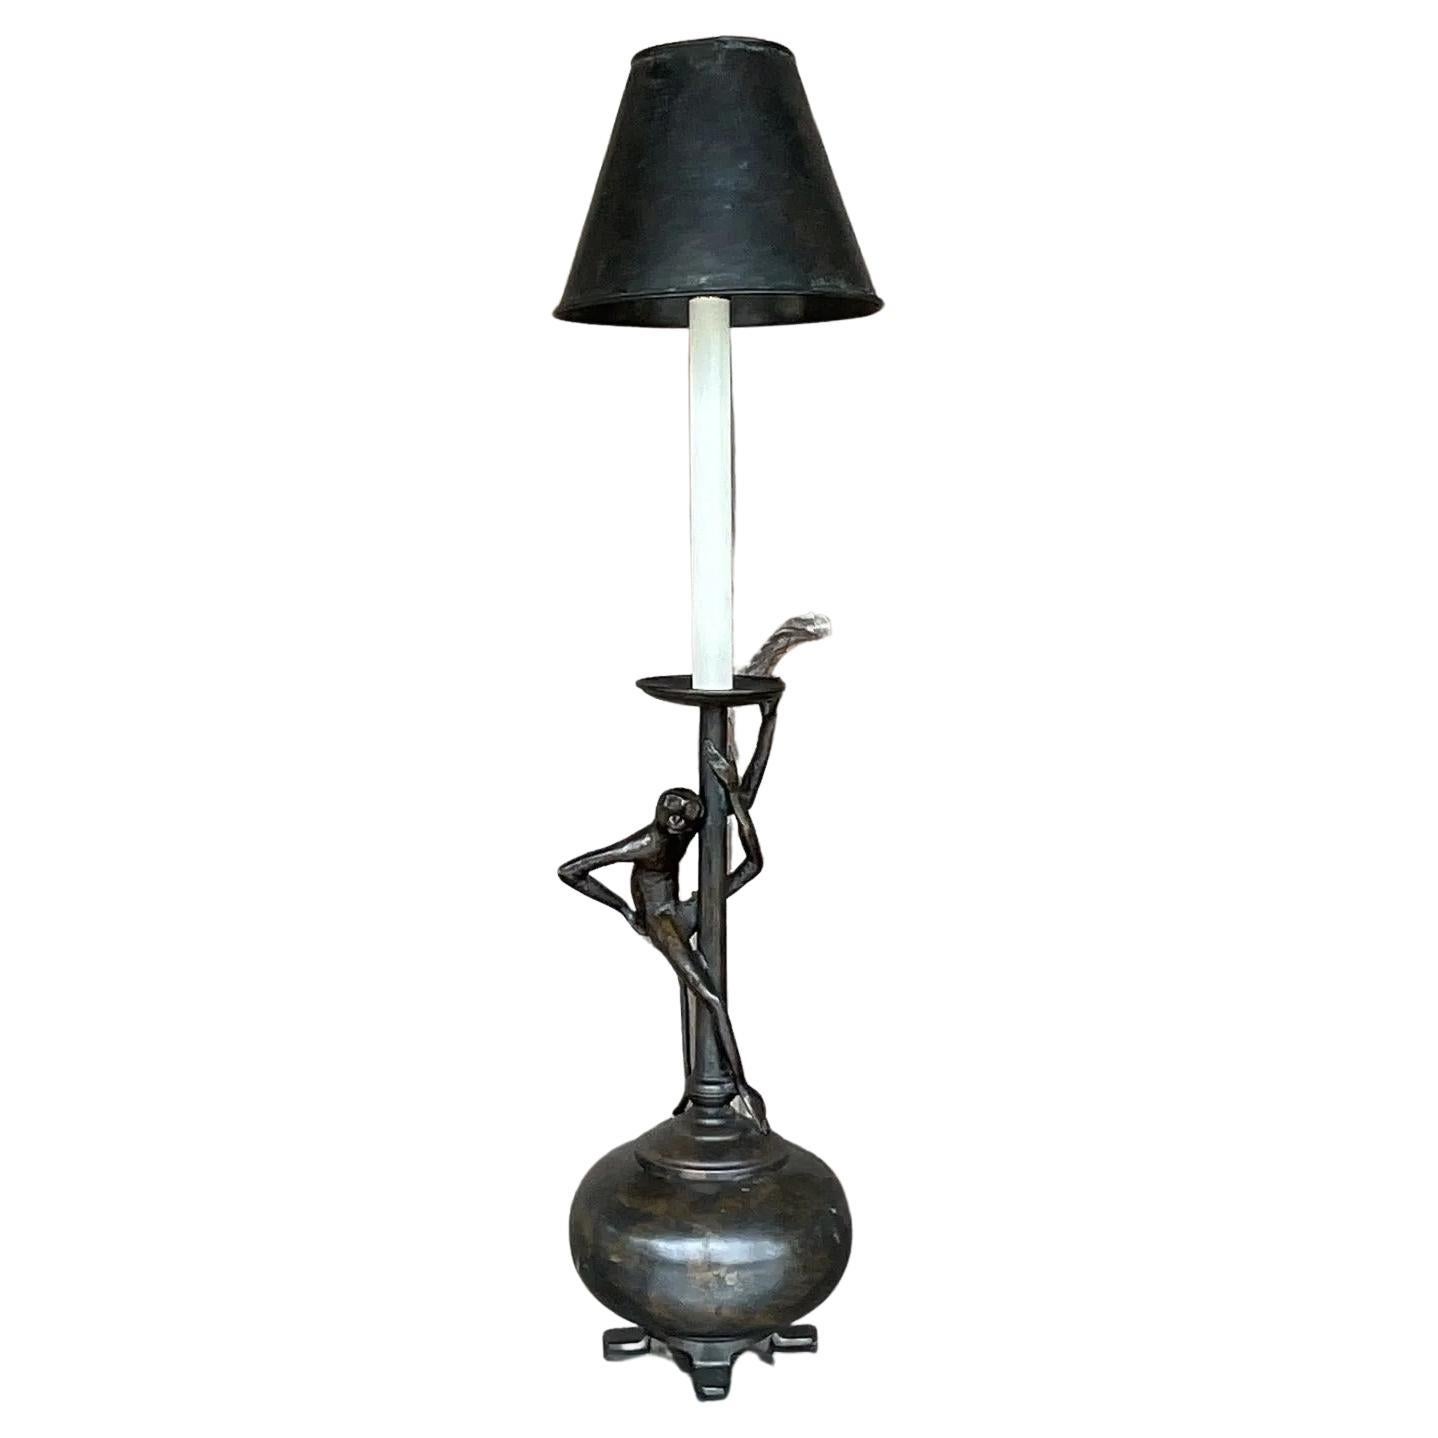 How do I identify a vintage porcelain lamp?